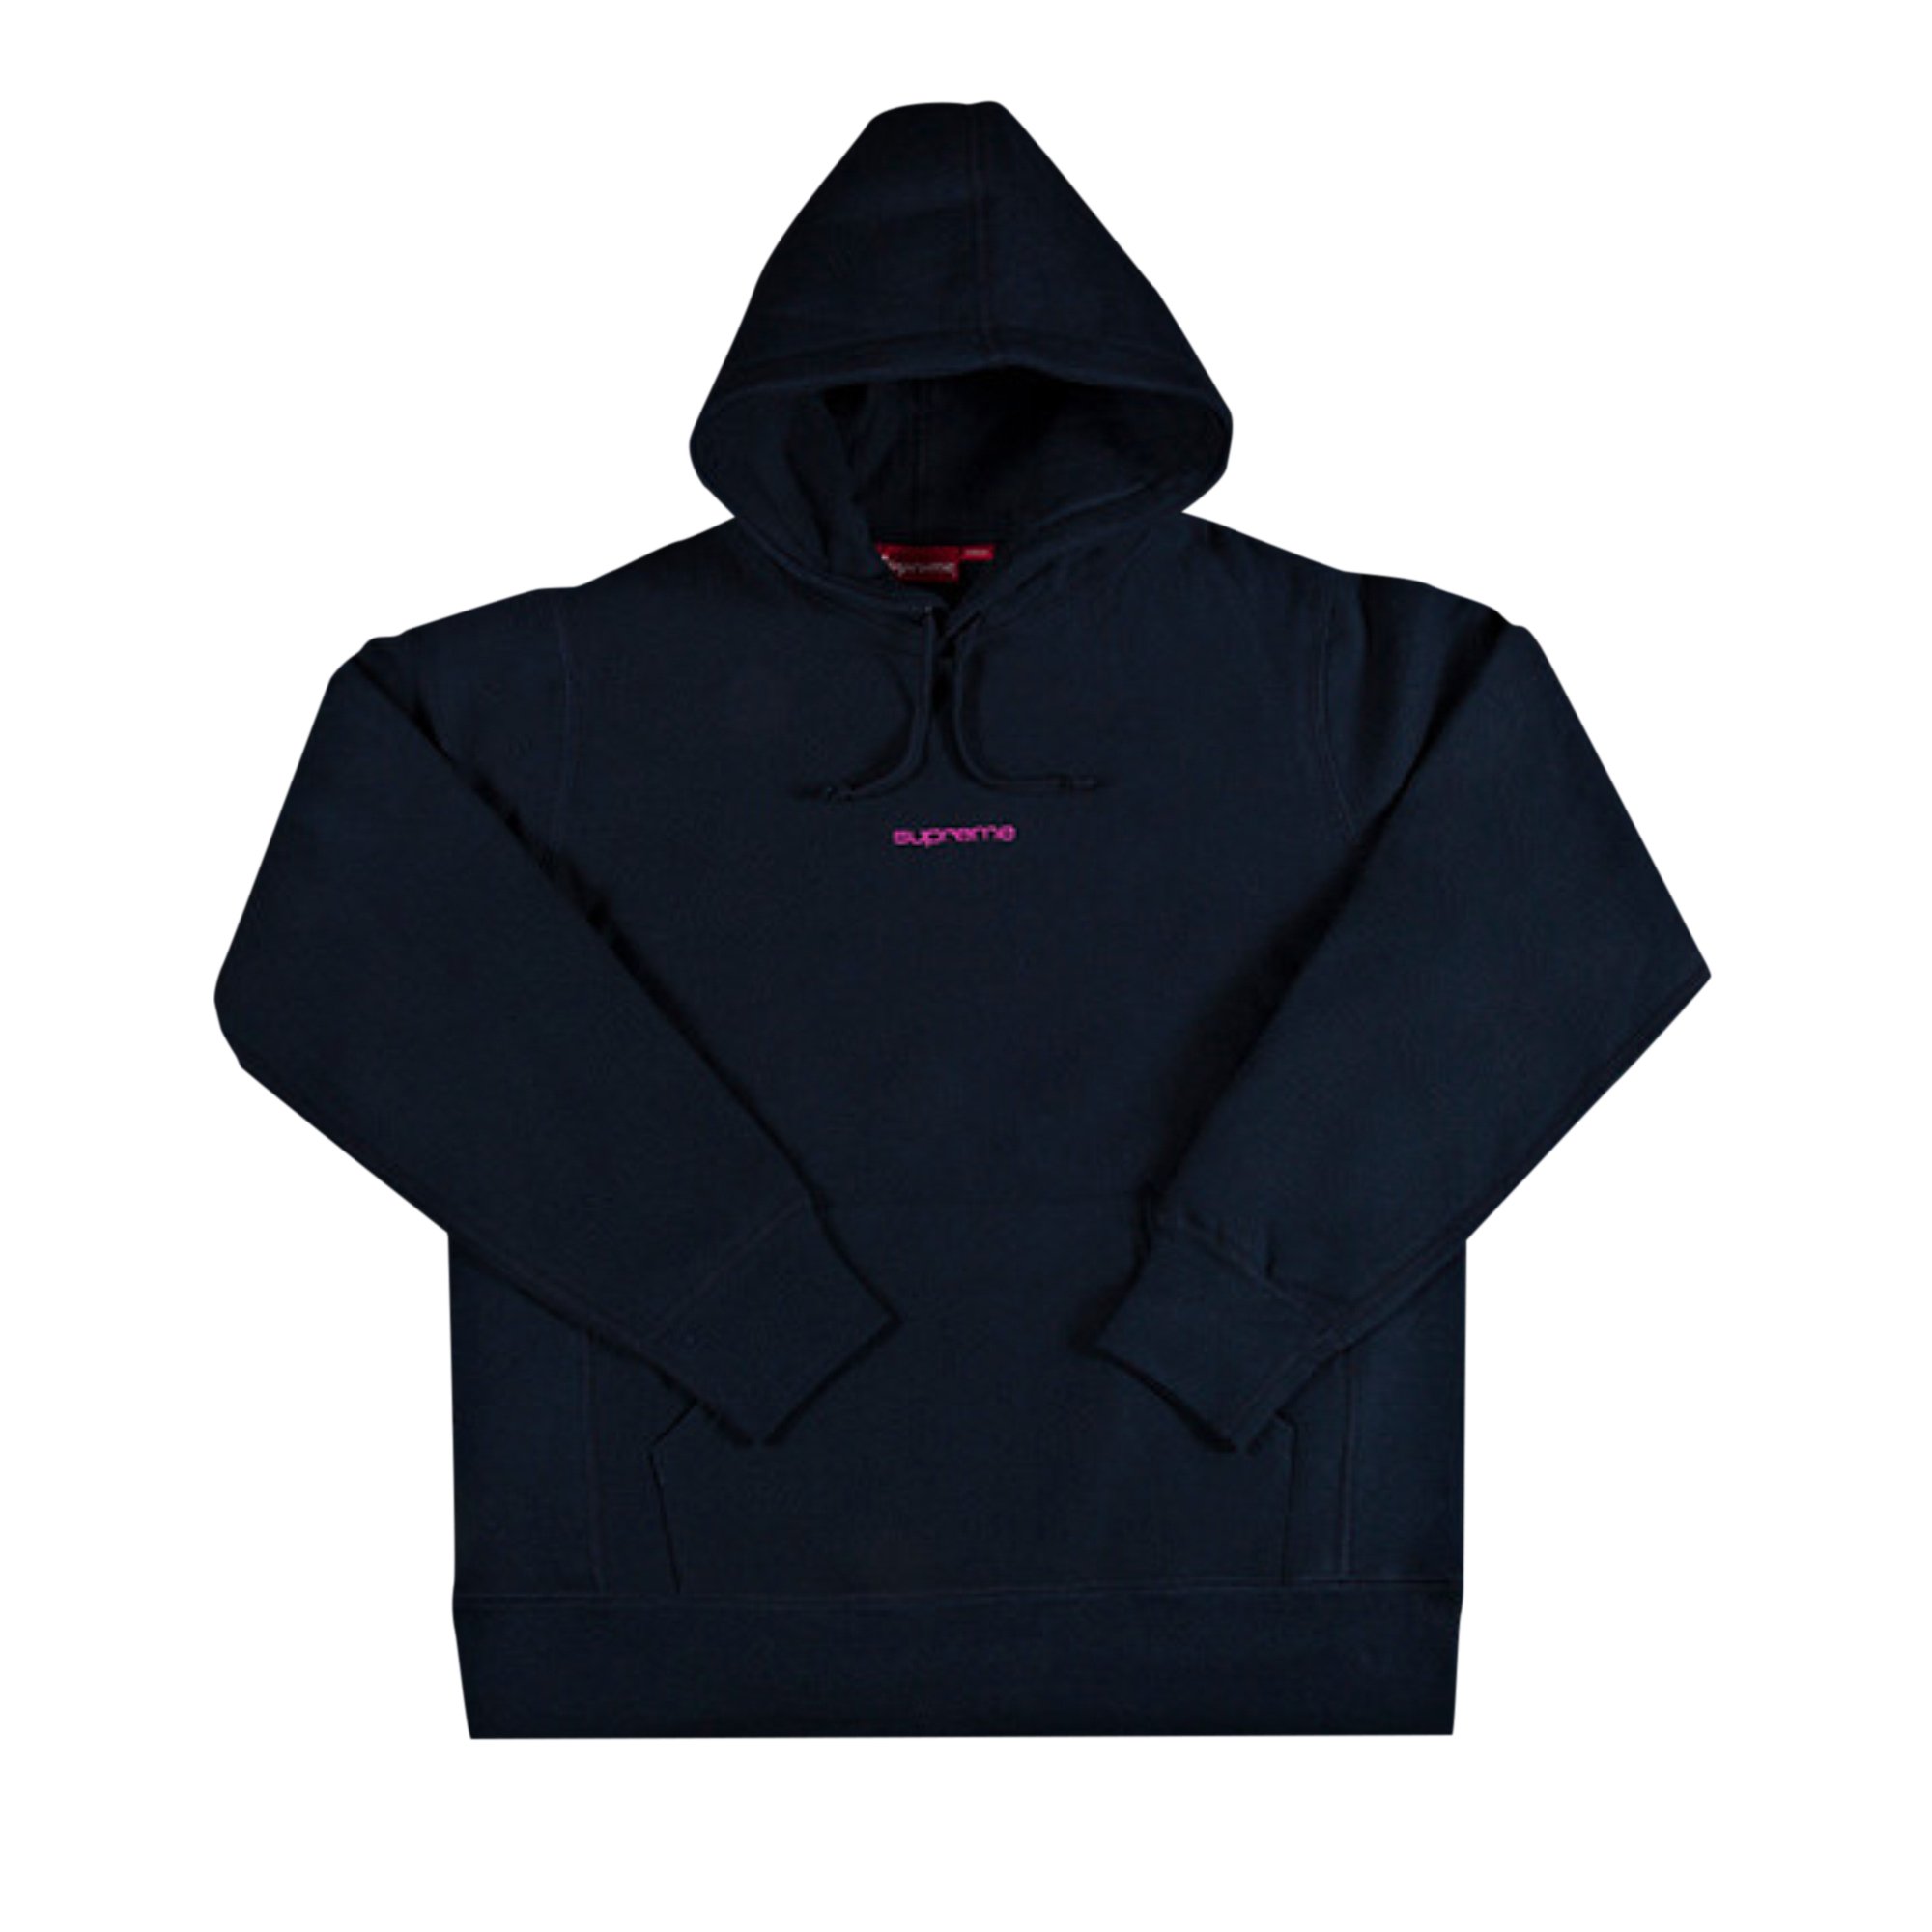 Buy Supreme Compact Logo Hooded Sweatshirt 'Navy' - FW17SW31 NAVY